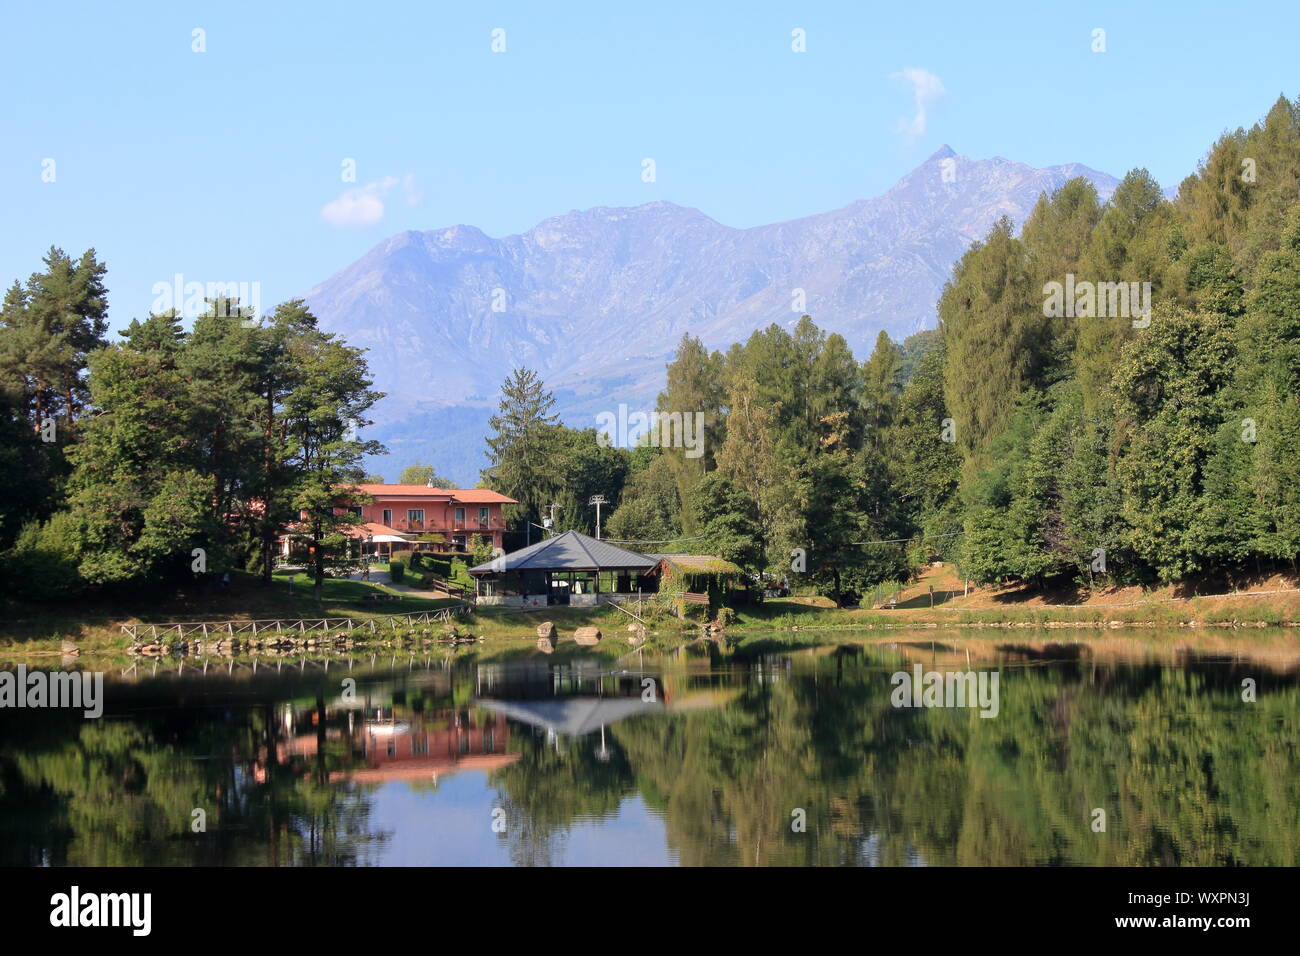 Panorama classique d'un lac alpin dans une vallée d'origine morainique, Alpes italiennes dans la région du Piémont Banque D'Images